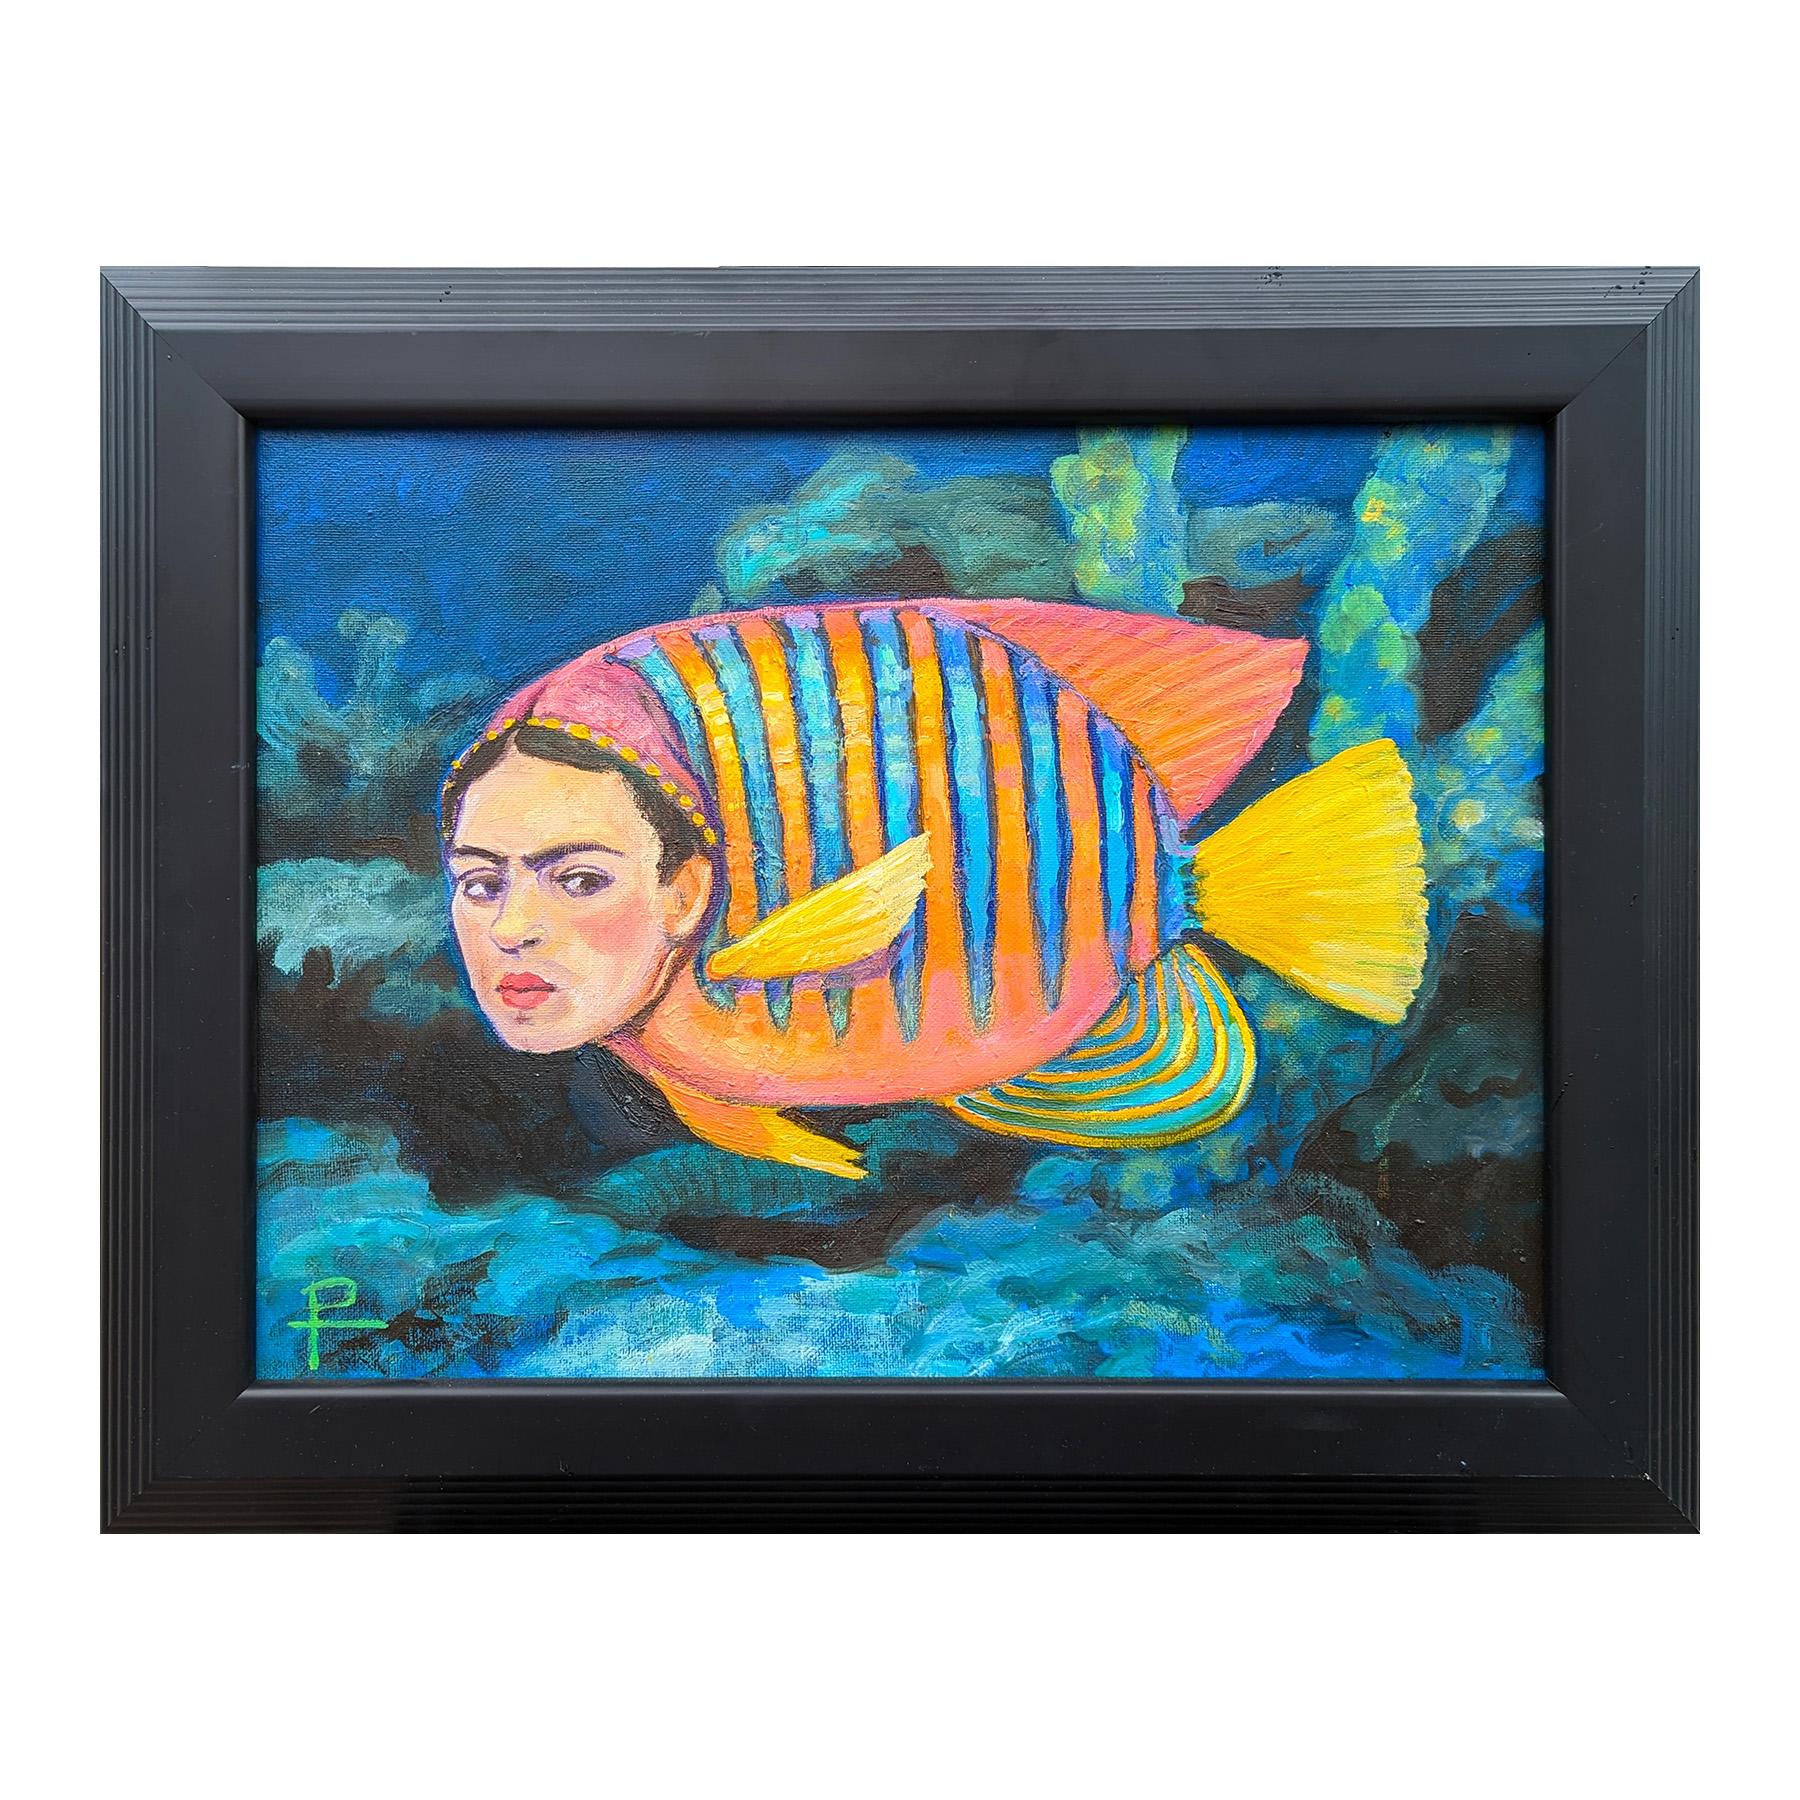 Farbenfrohes, juwelenfarbenes Gemälde des zeitgenössischen Künstlers Henry David Potwin. Das Werk zeigt eine surreale Darstellung eines tropischen Fisches mit dem Gesicht der berühmten Künstlerin Frida Kahlo. Signiert in der linken unteren Ecke der